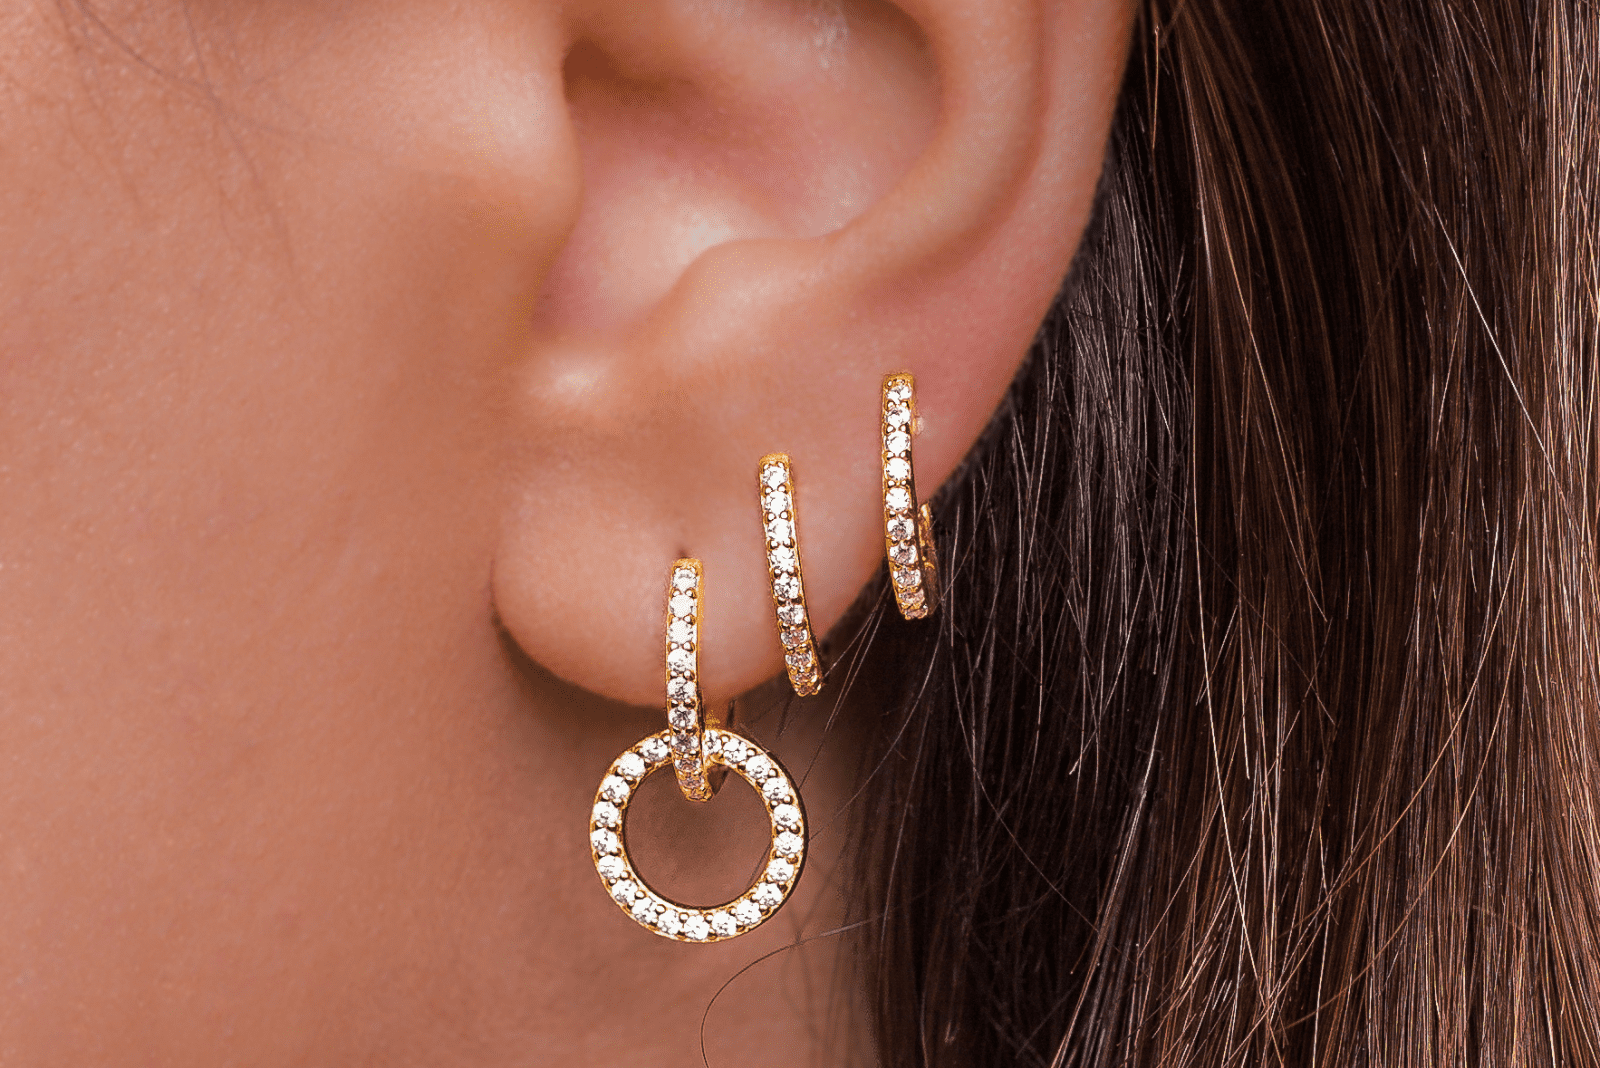 une femme avec des piercings d'oreille en or